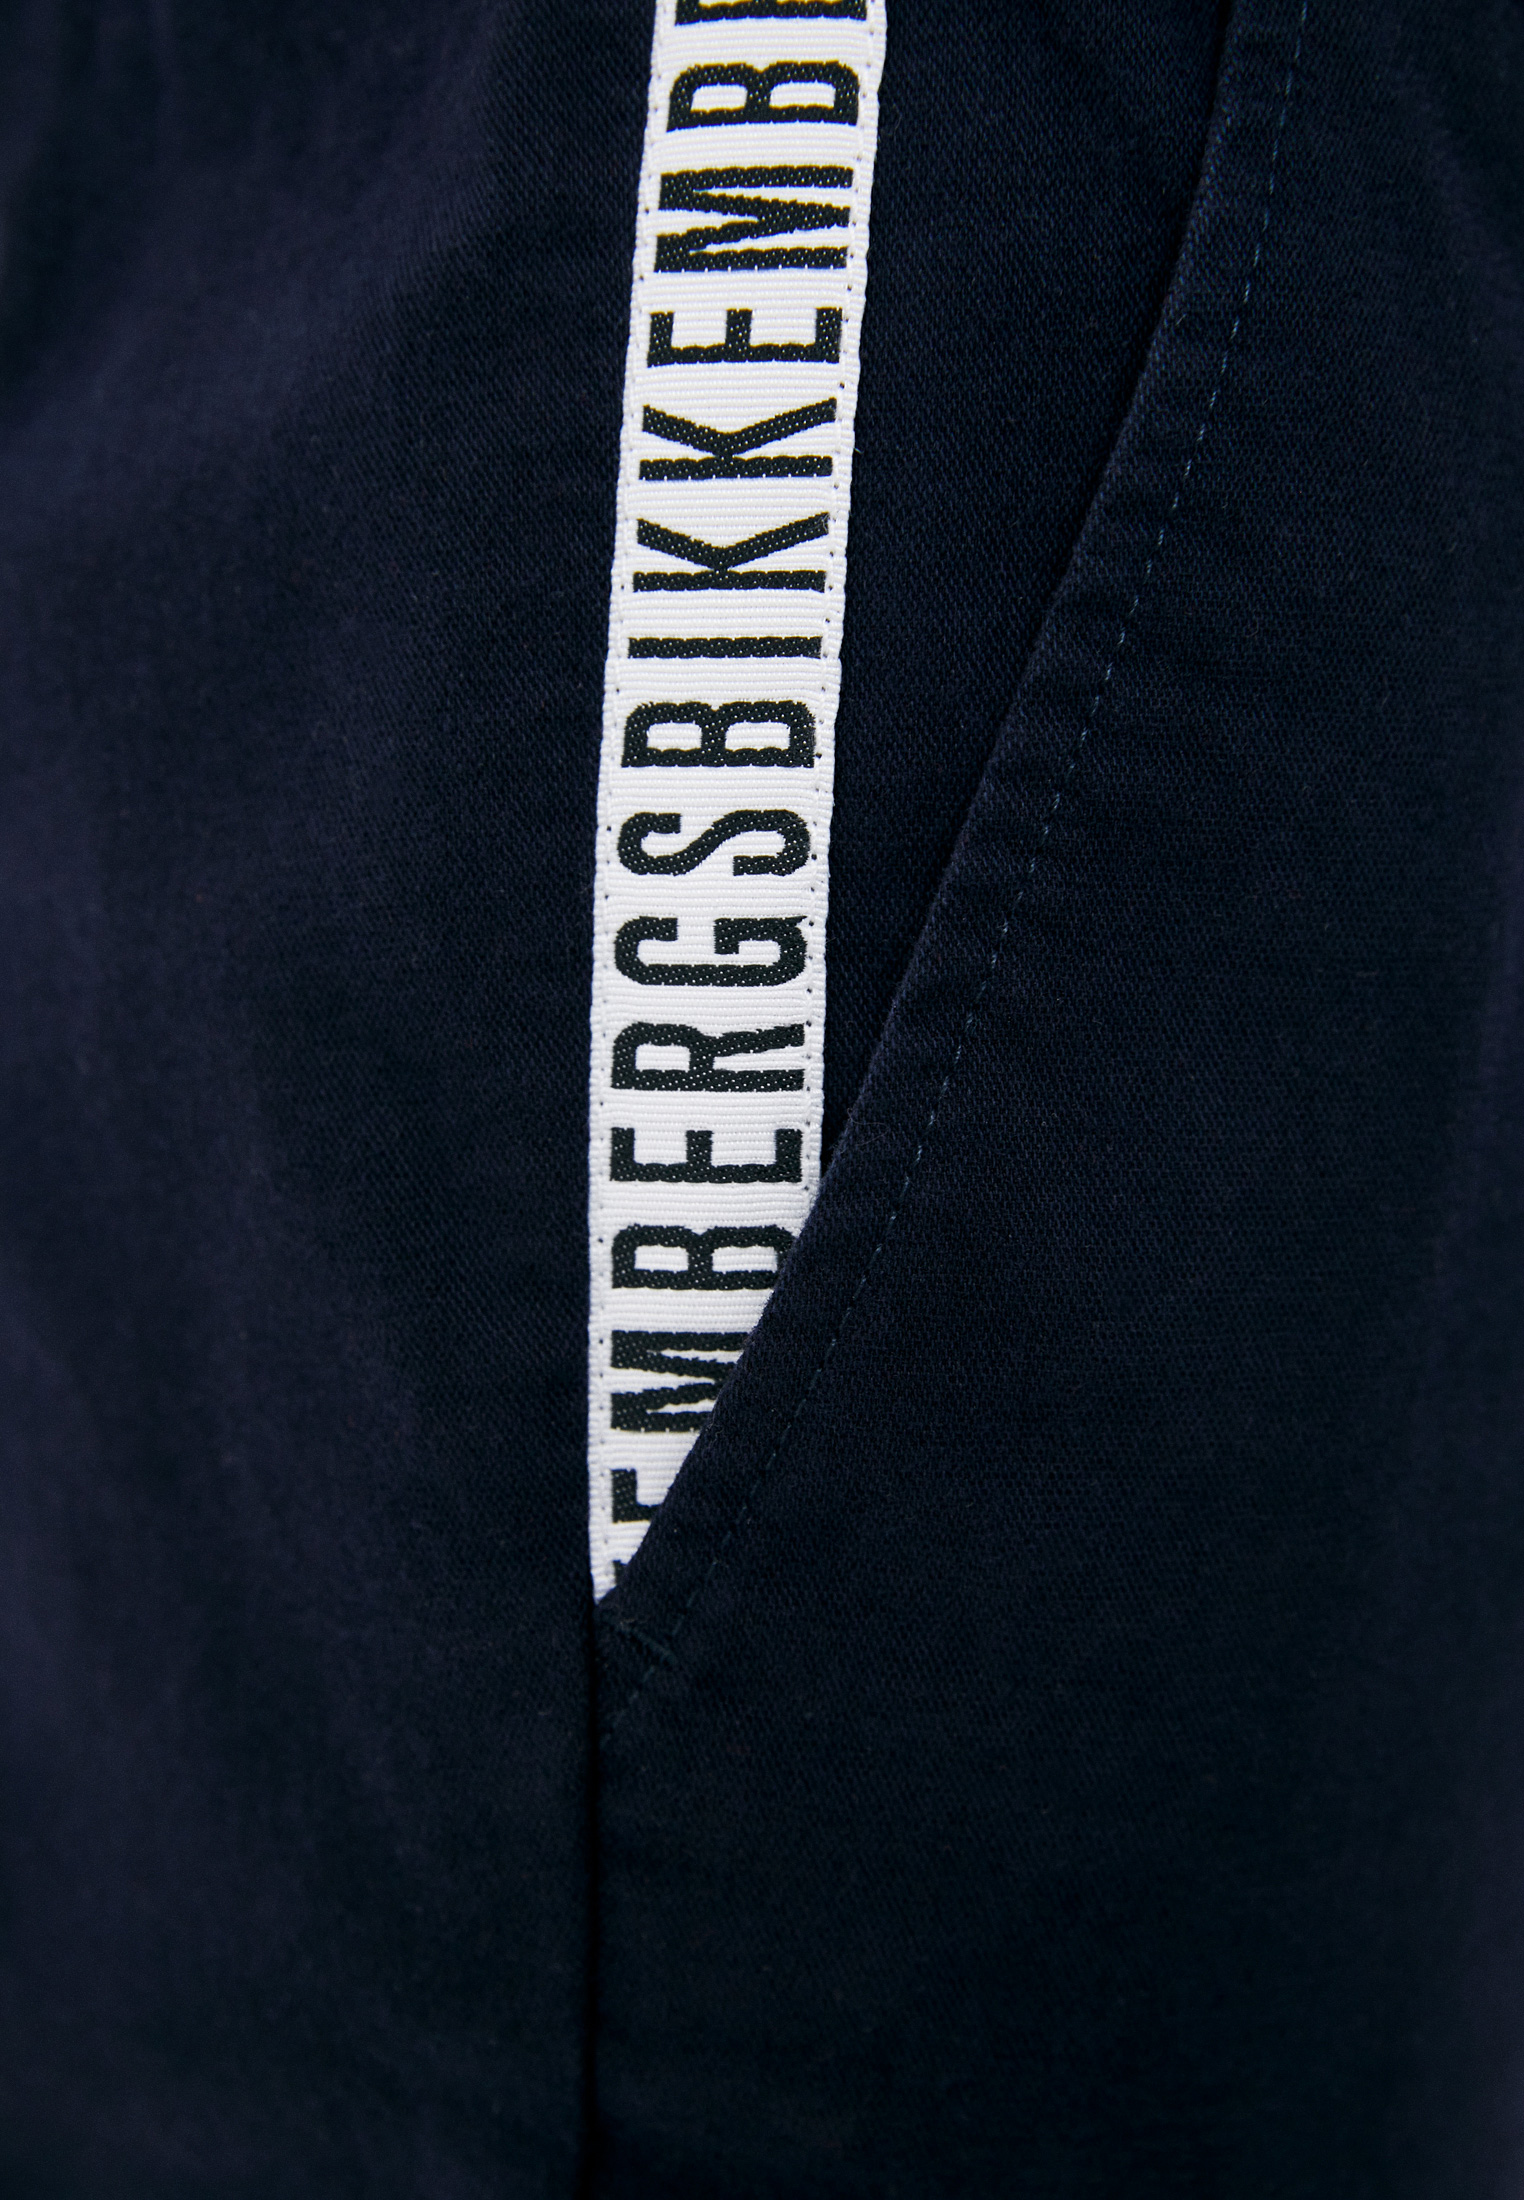 Мужские повседневные брюки Bikkembergs (Биккембергс) C P 039 00 S 3330: изображение 5